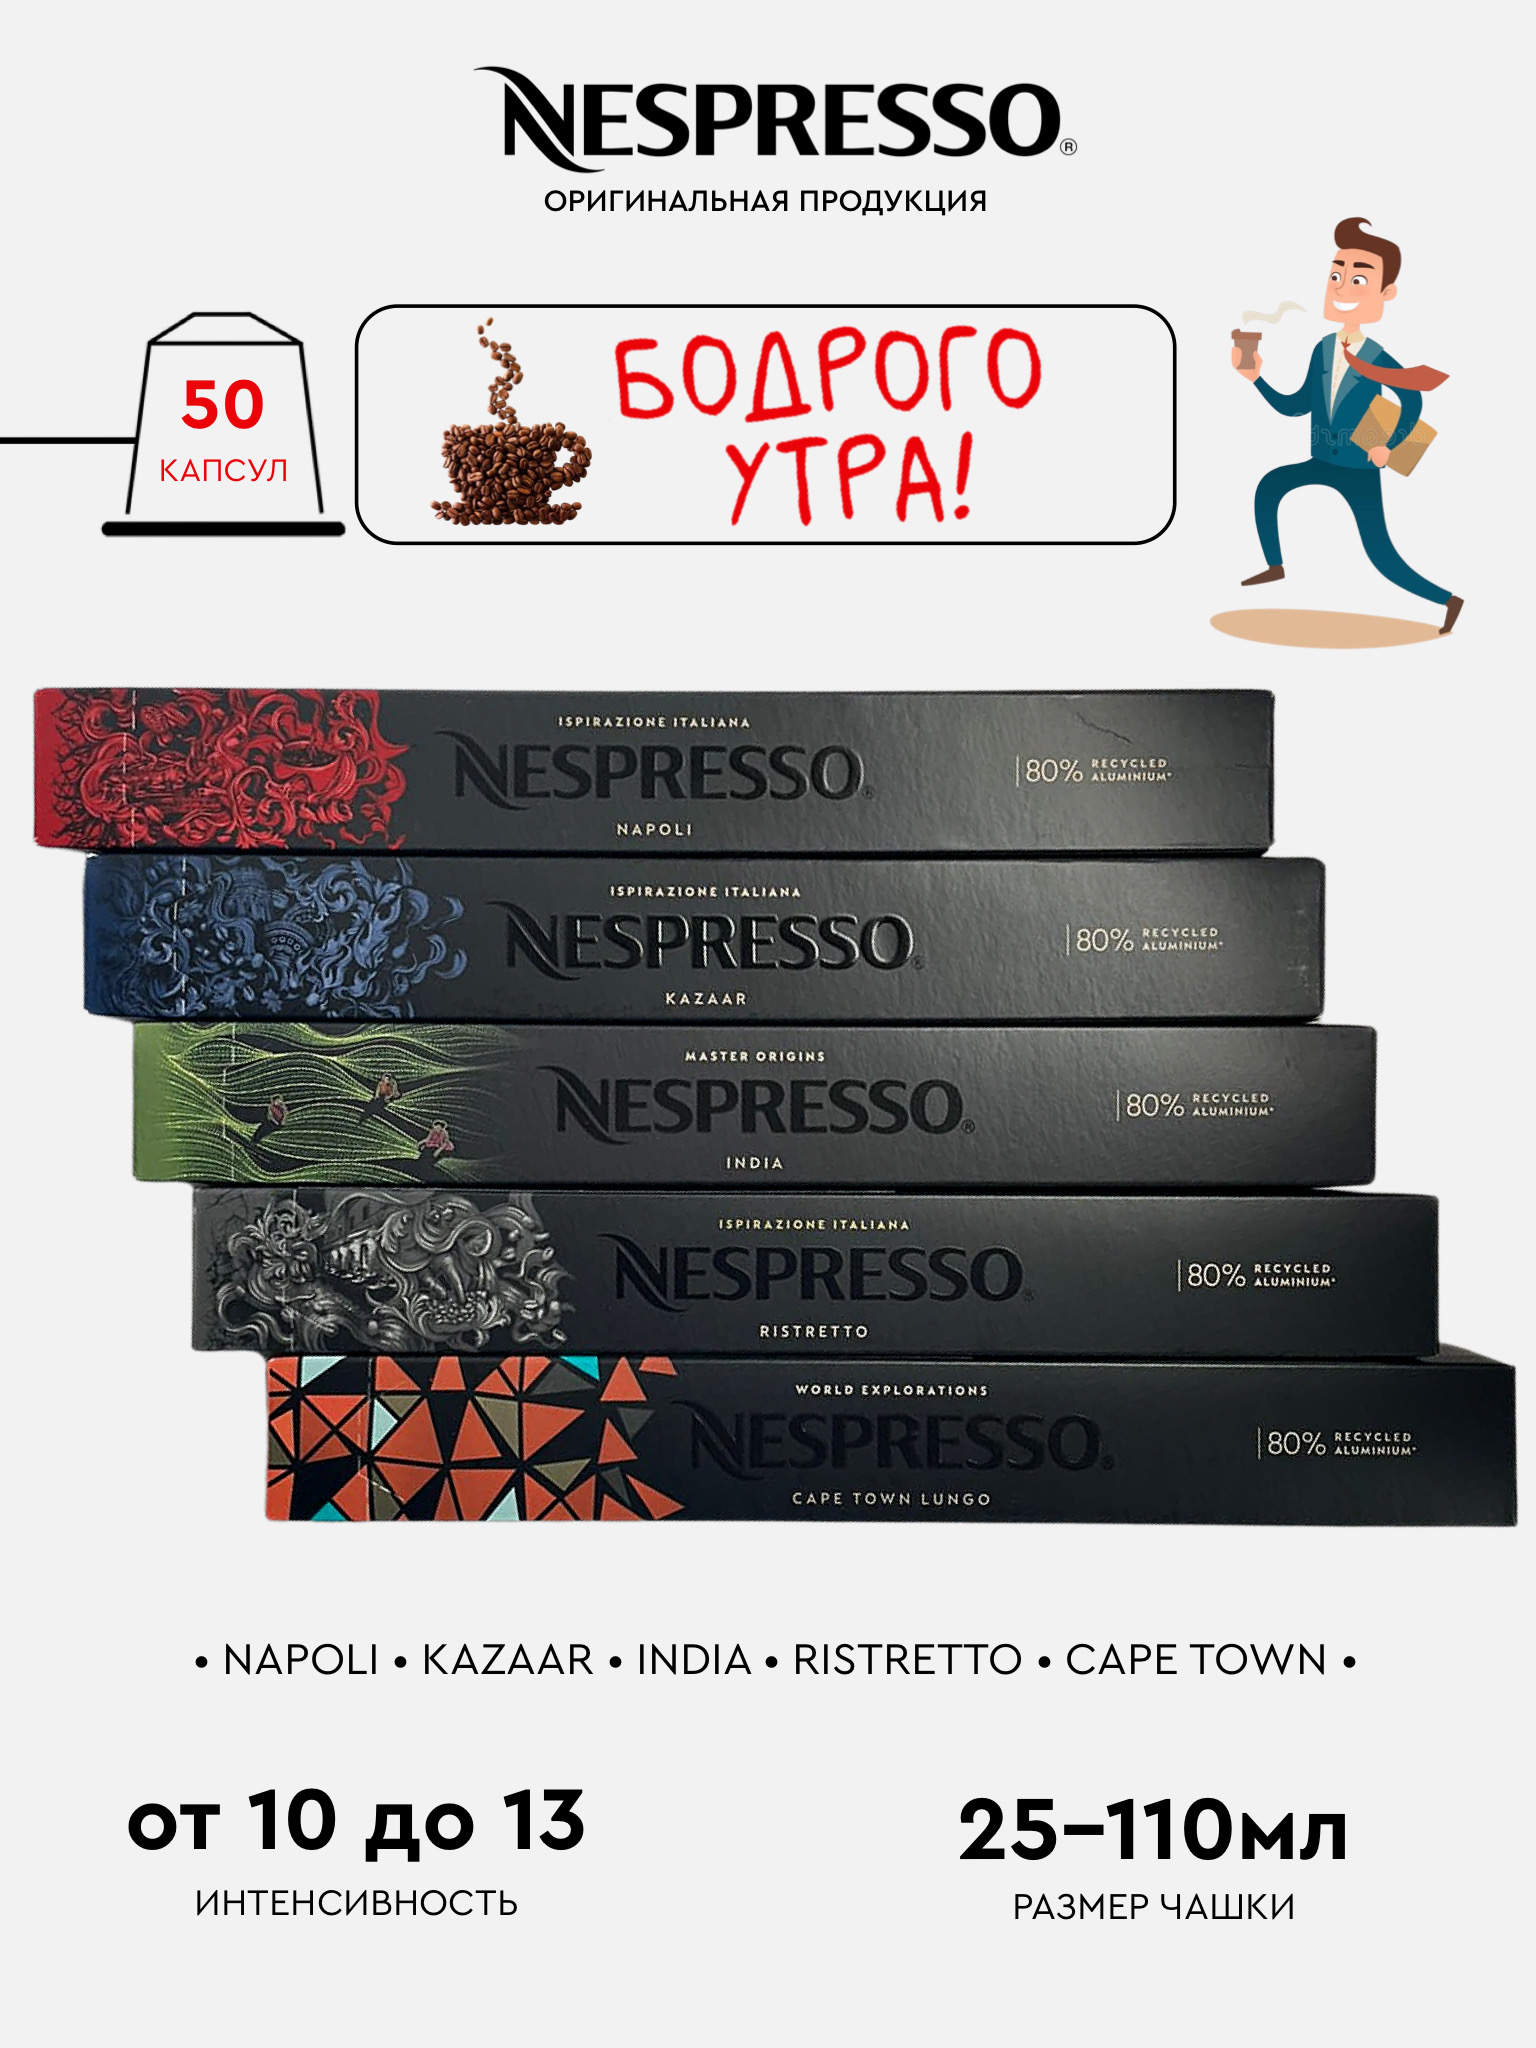 Капсулы для кофемашины Nespresso Original Набор Бодрого Утра, 50 шт